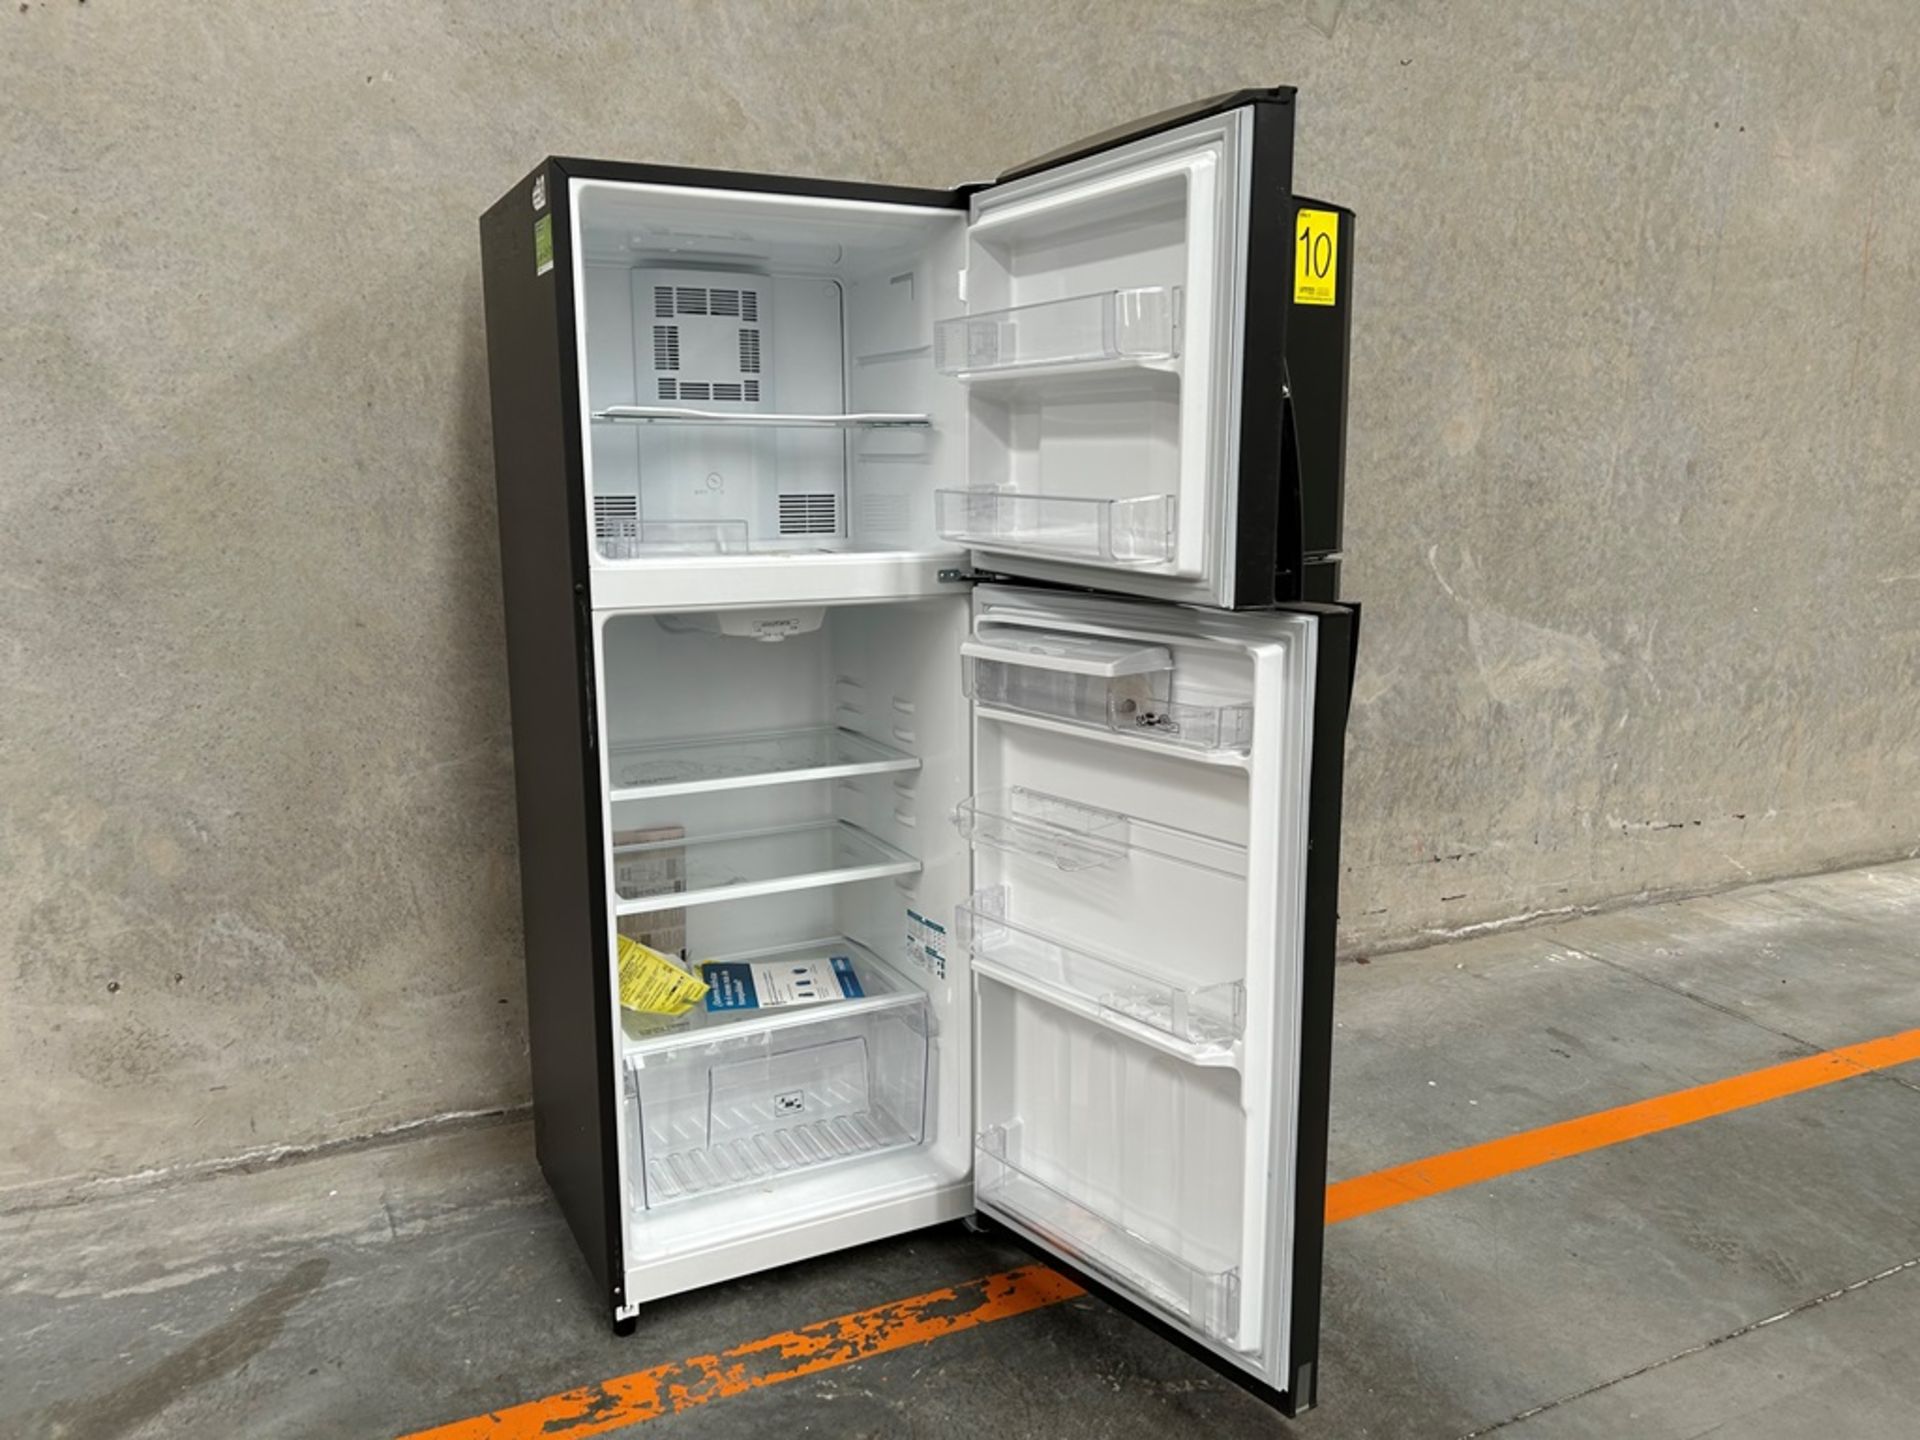 Lote de 2 refrigeradores contiene: 1 Refrigerador con dispensador de agua Marca MABE, Modelo RME360 - Image 4 of 18